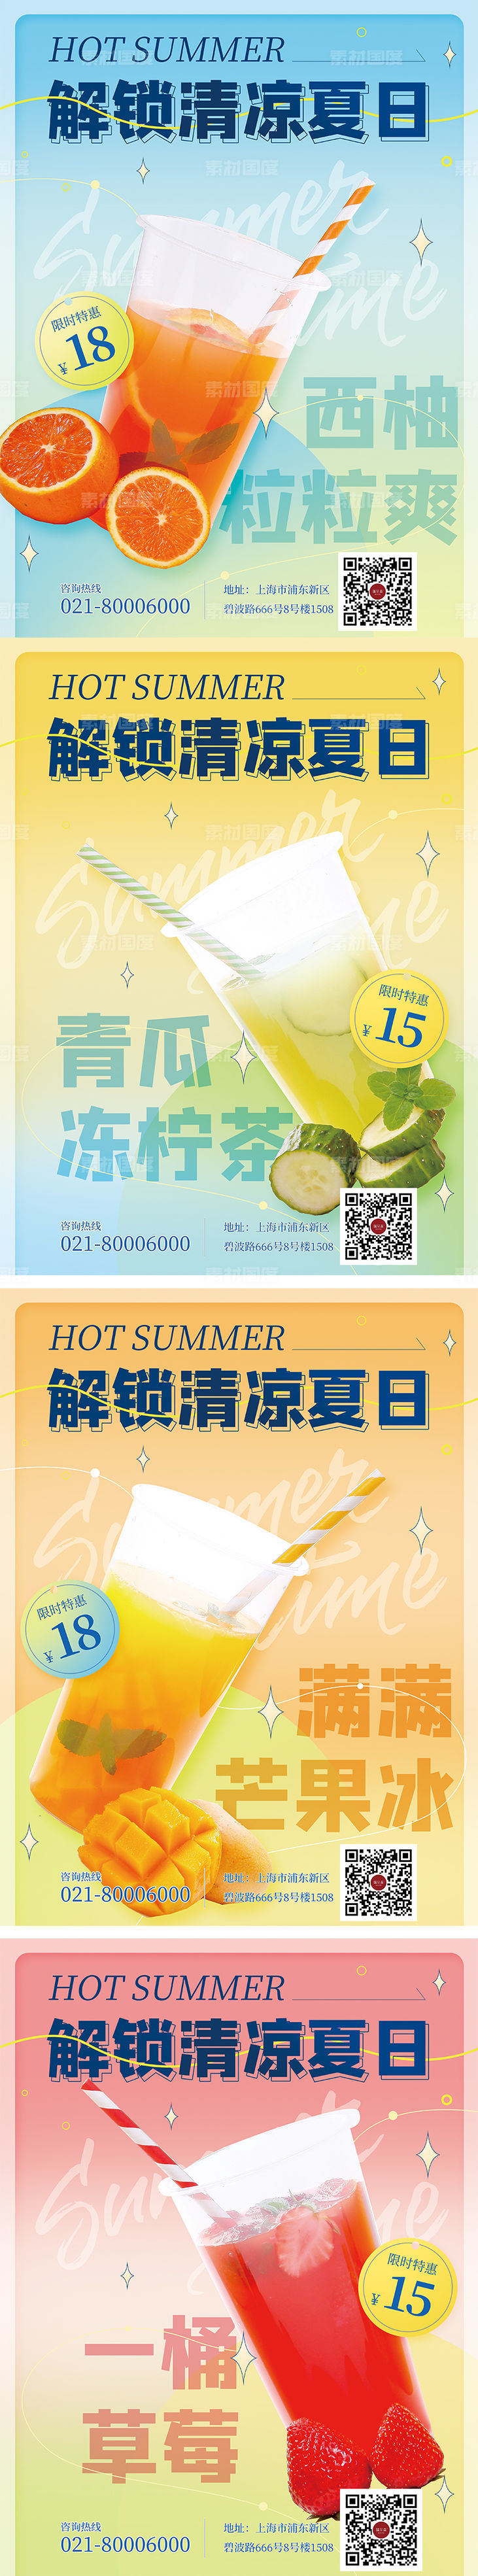 夏季饮品活动促销系列海报